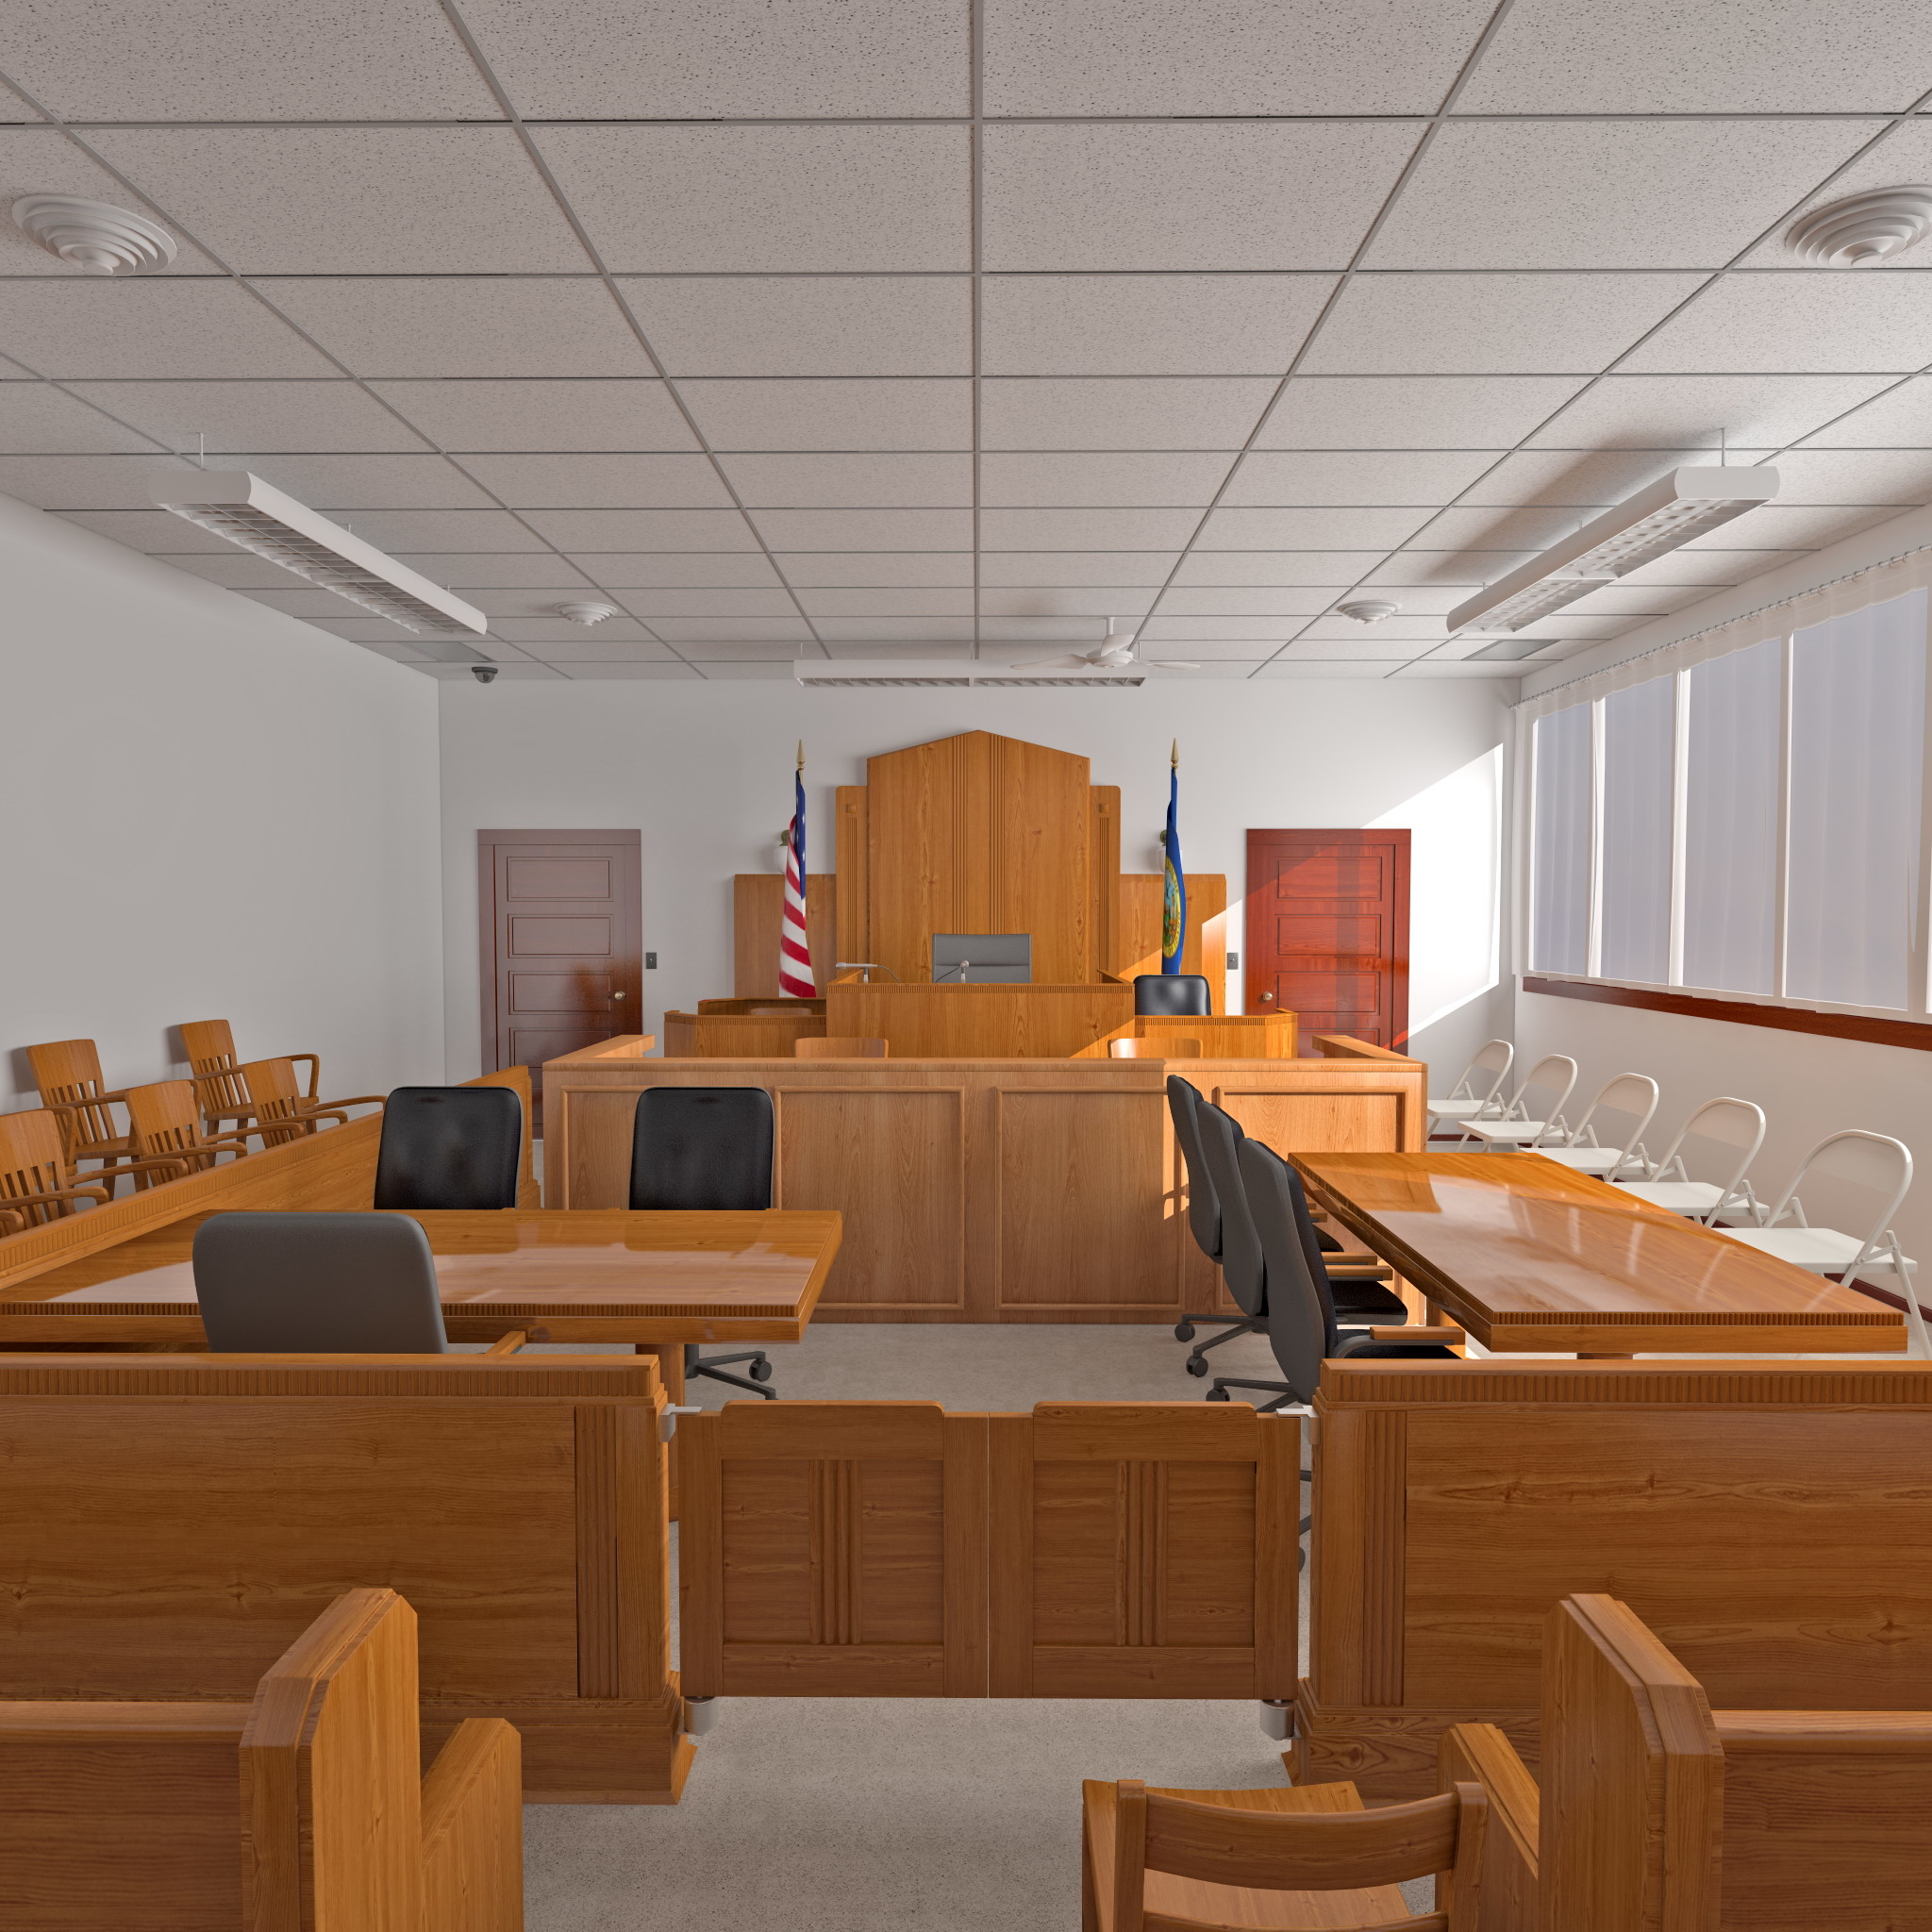 模拟法庭背景布图图片